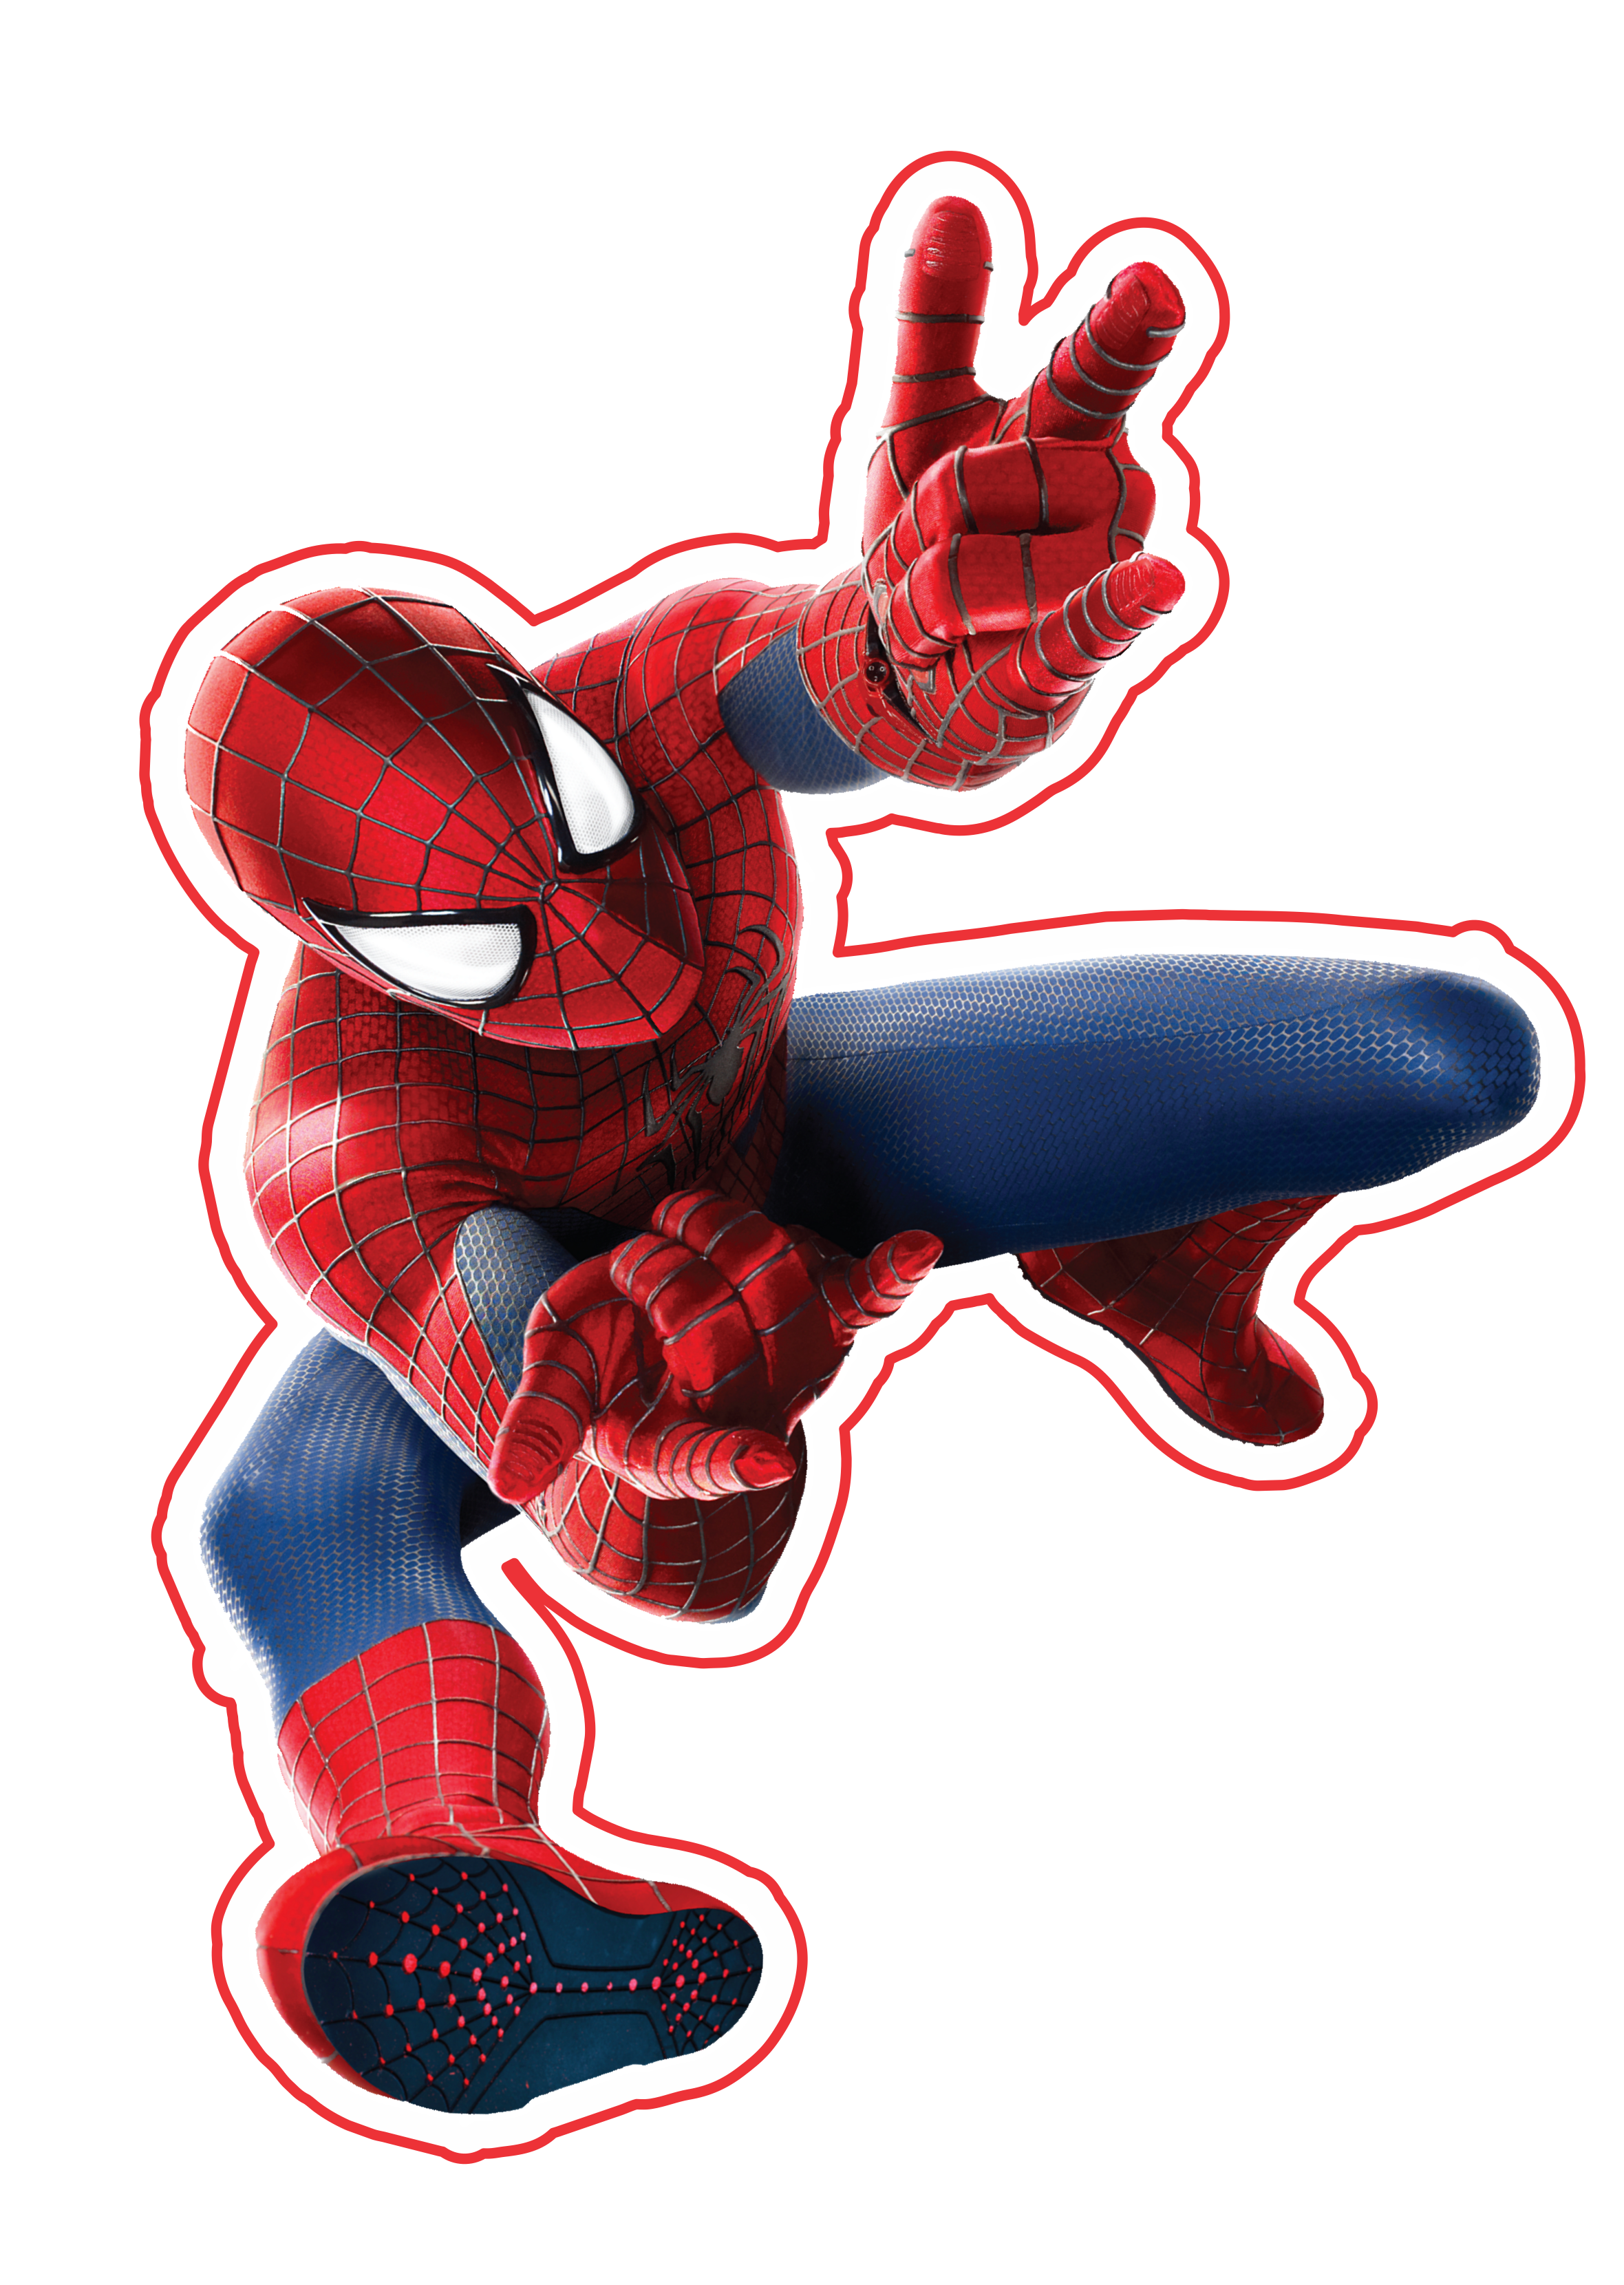 Homem aranha trilogia clássica imagem fundo transparente Marvel super heróis free image png